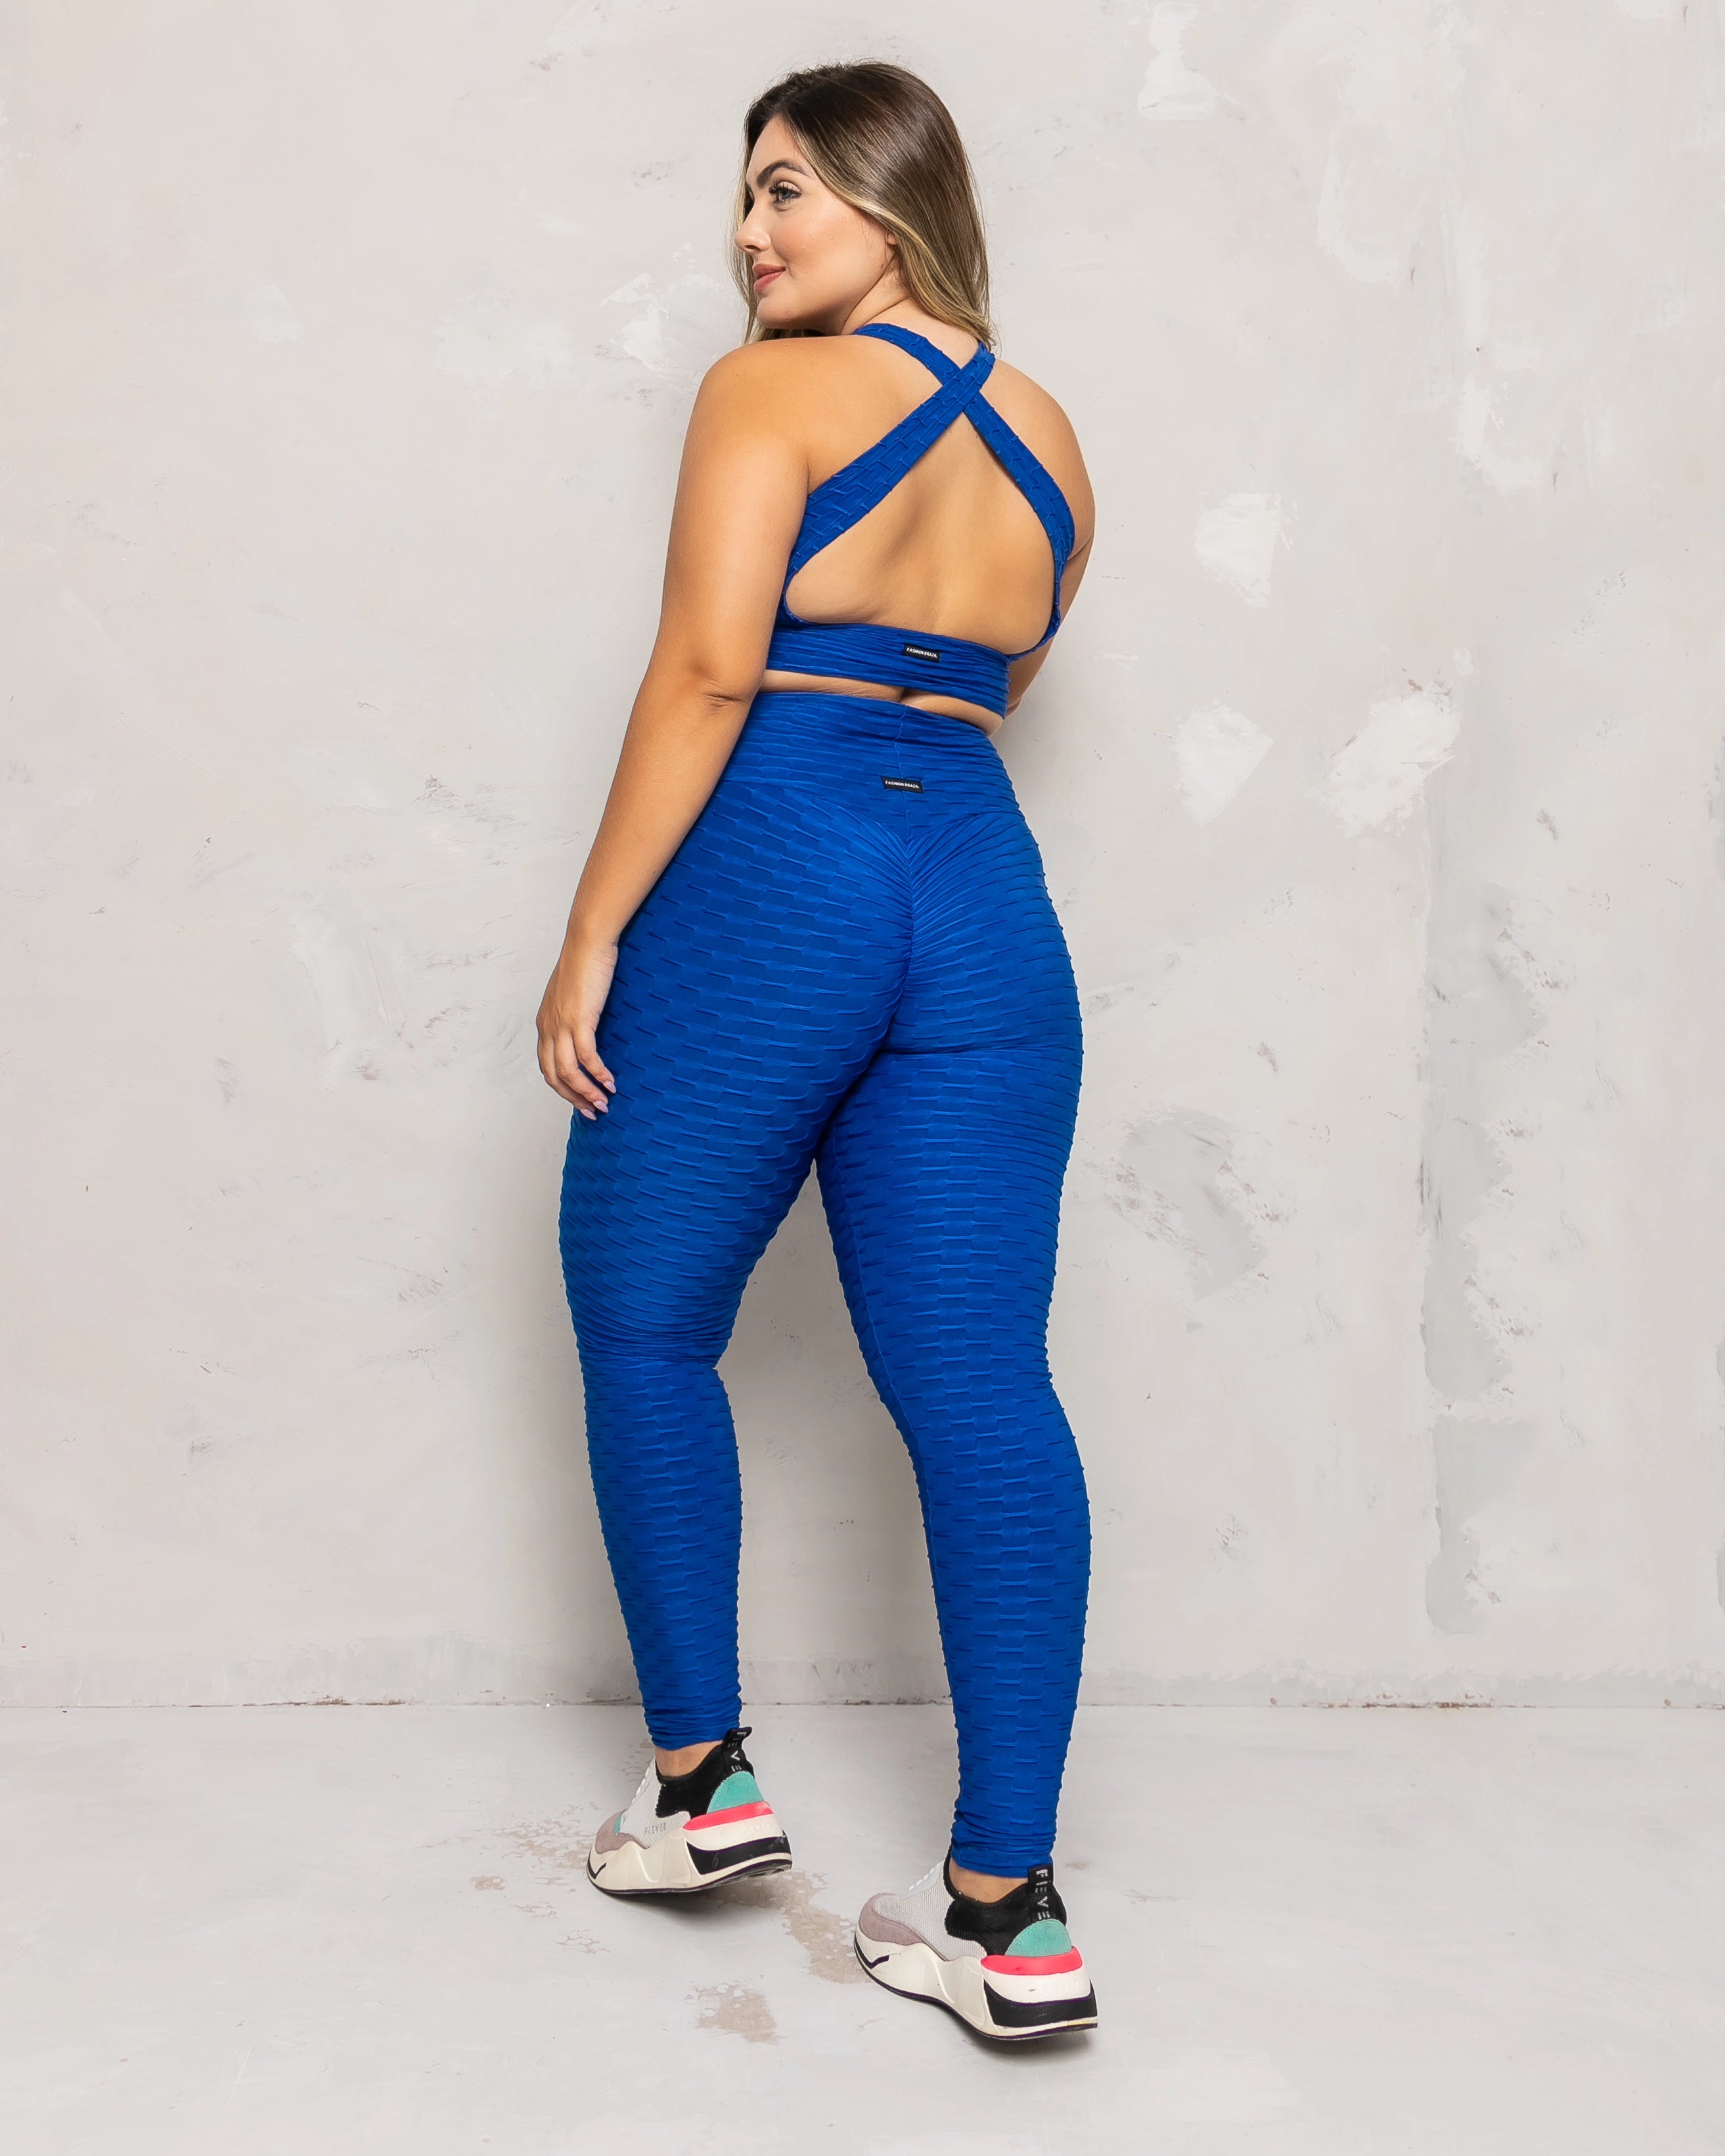 Stylish And Designer scrunch butt leggings set –